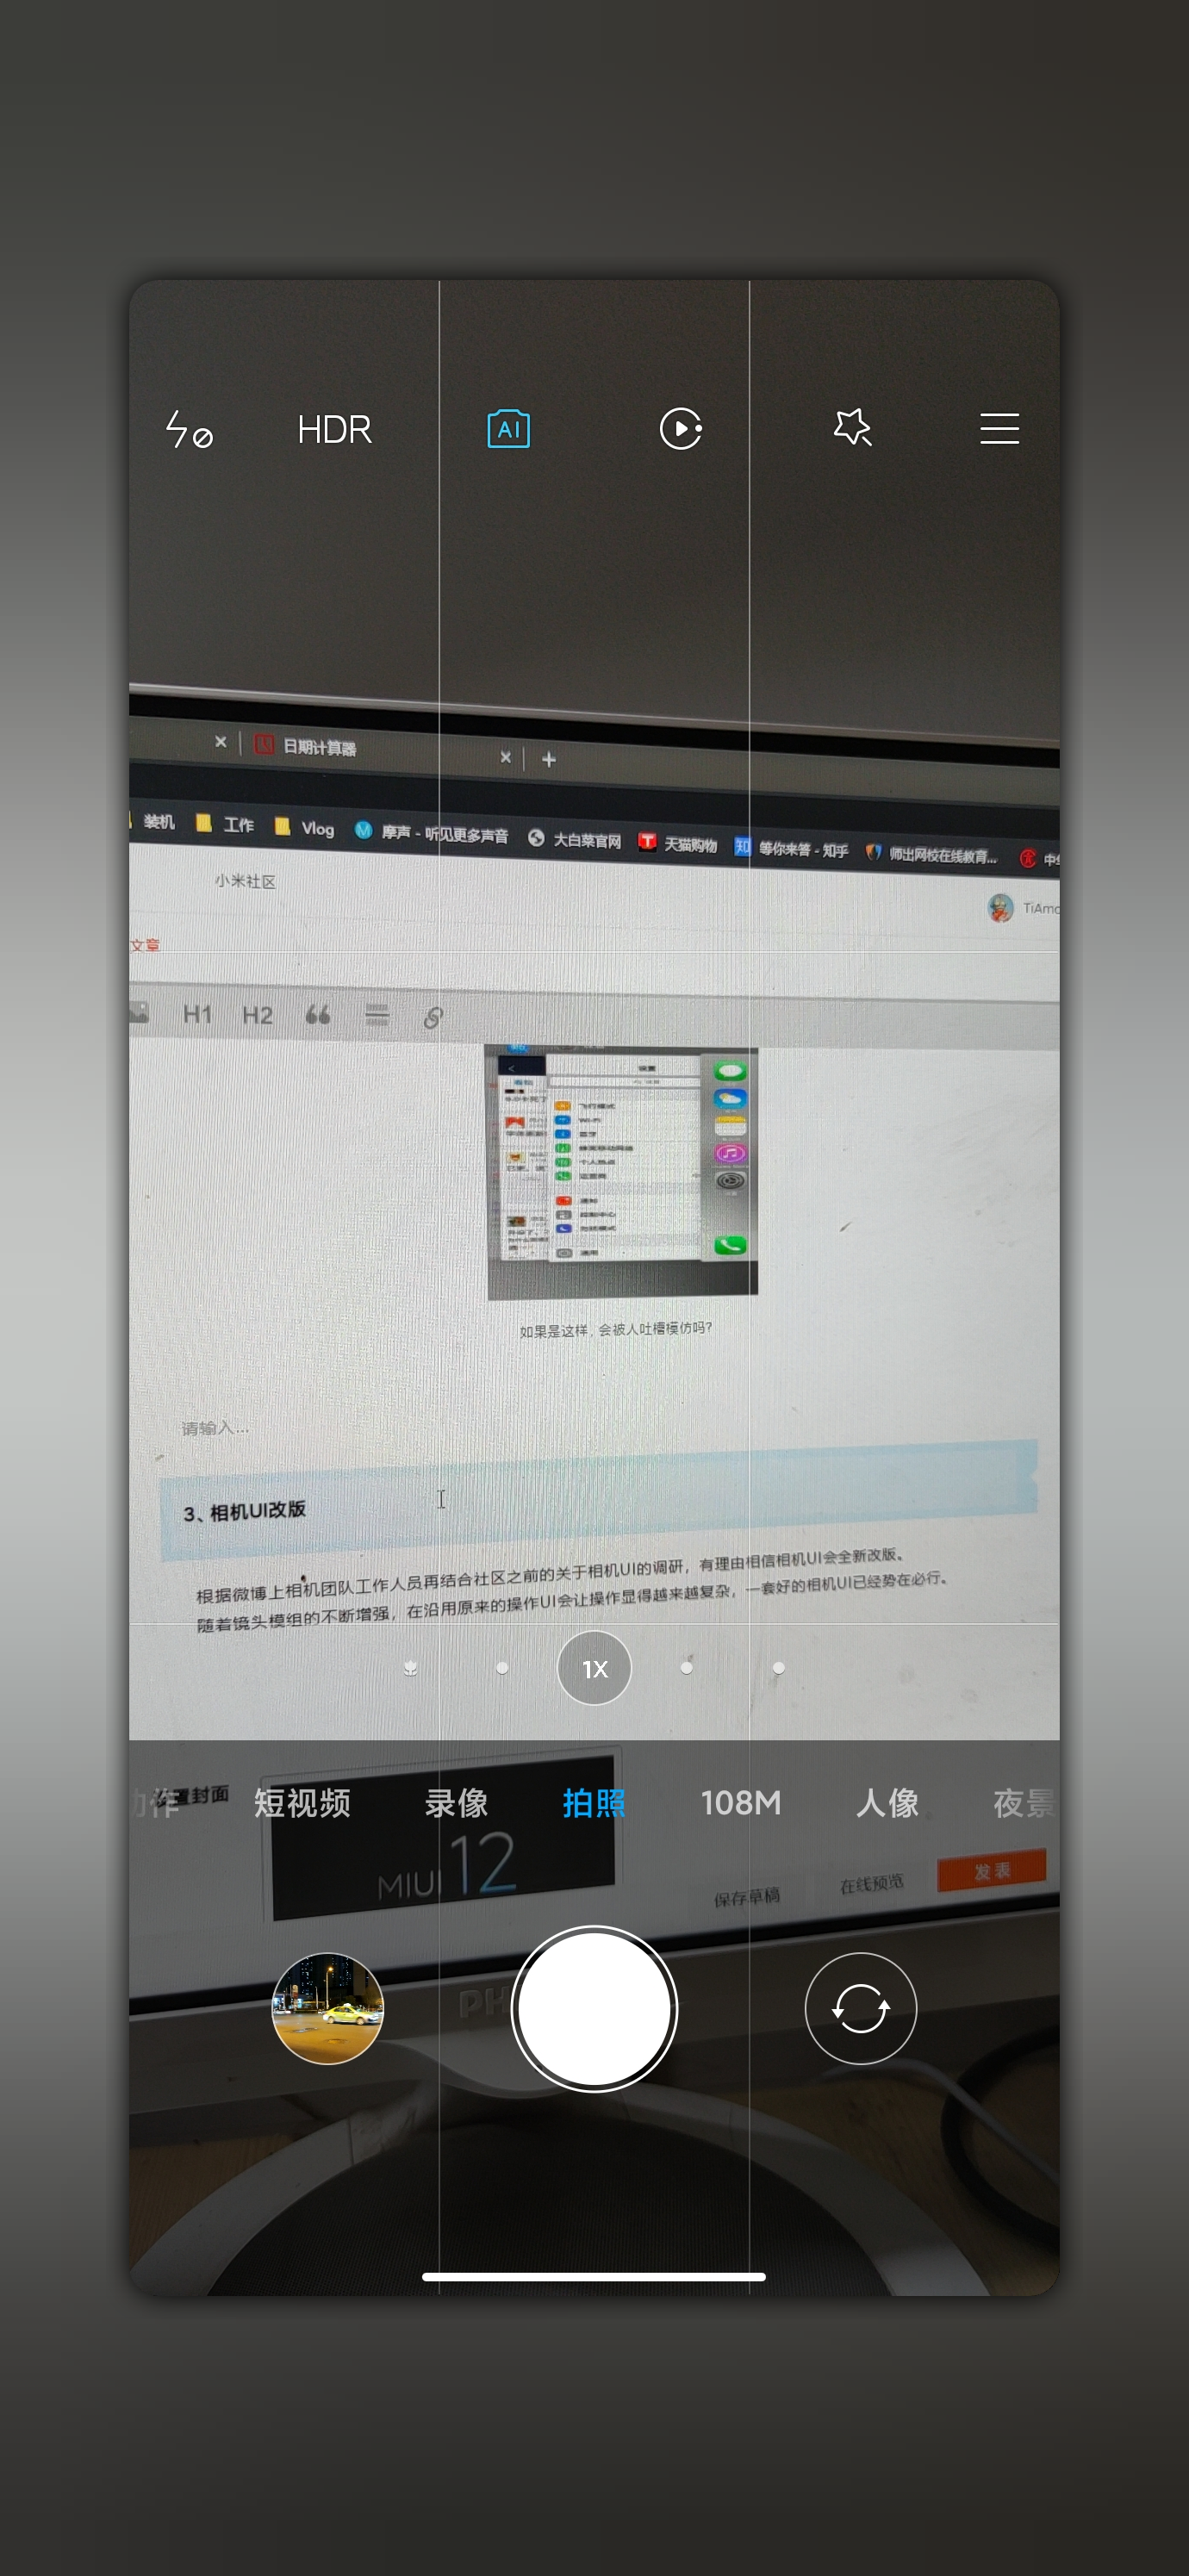 Les prochaines fonctionnalités MIUI 12 de Xiaomi sont attendues 5